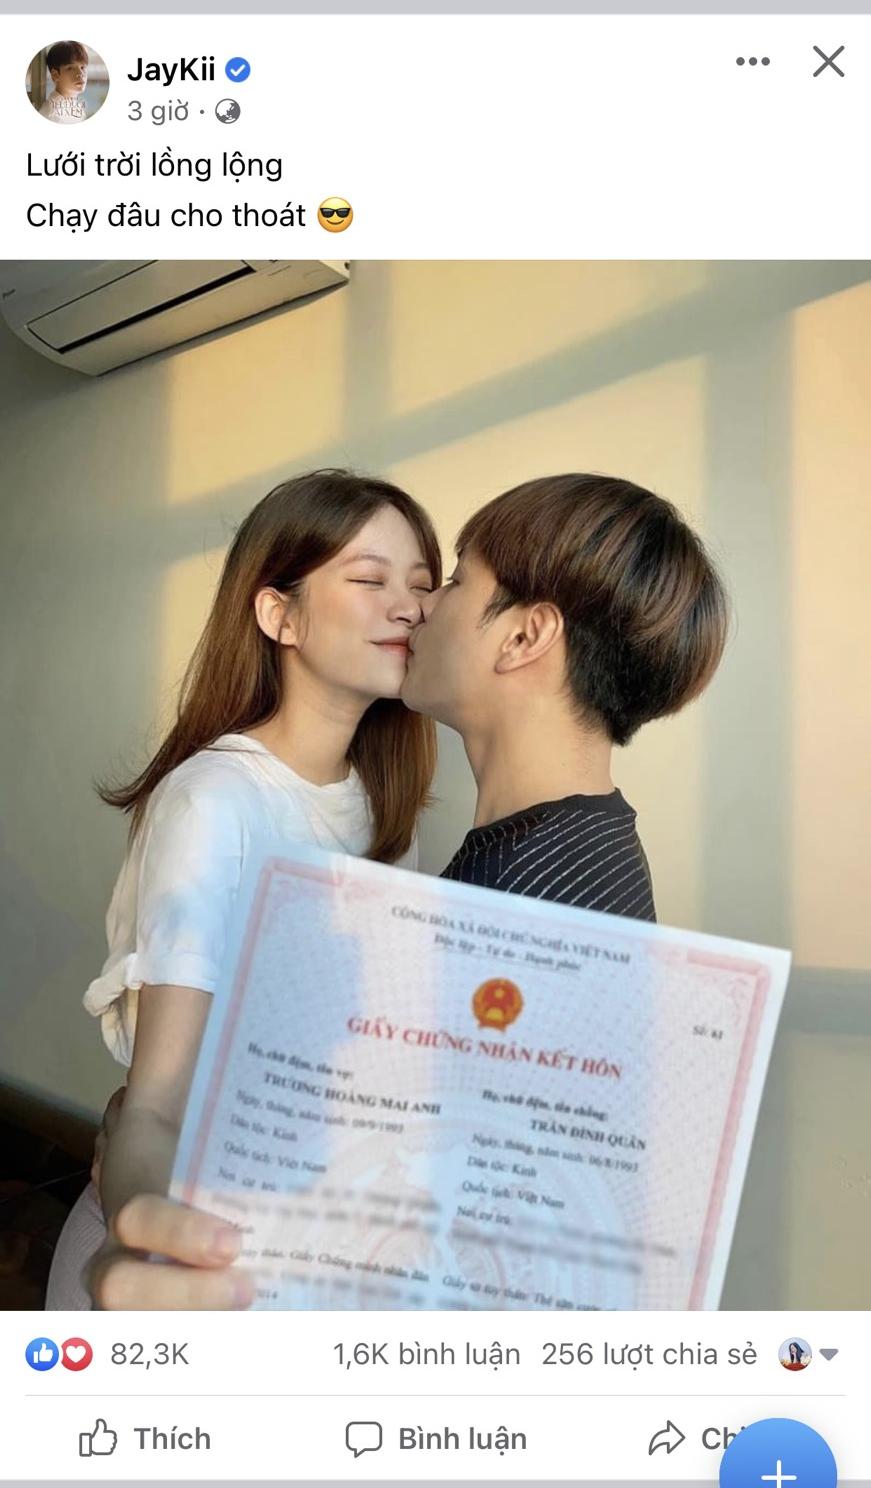 Jaykii khiến dân tình xôn xao khi đăng tải hình ảnh bên bà xã cũng giấy chứng nhận kết hôn sau 1 tháng thông báo có con đầu lòng